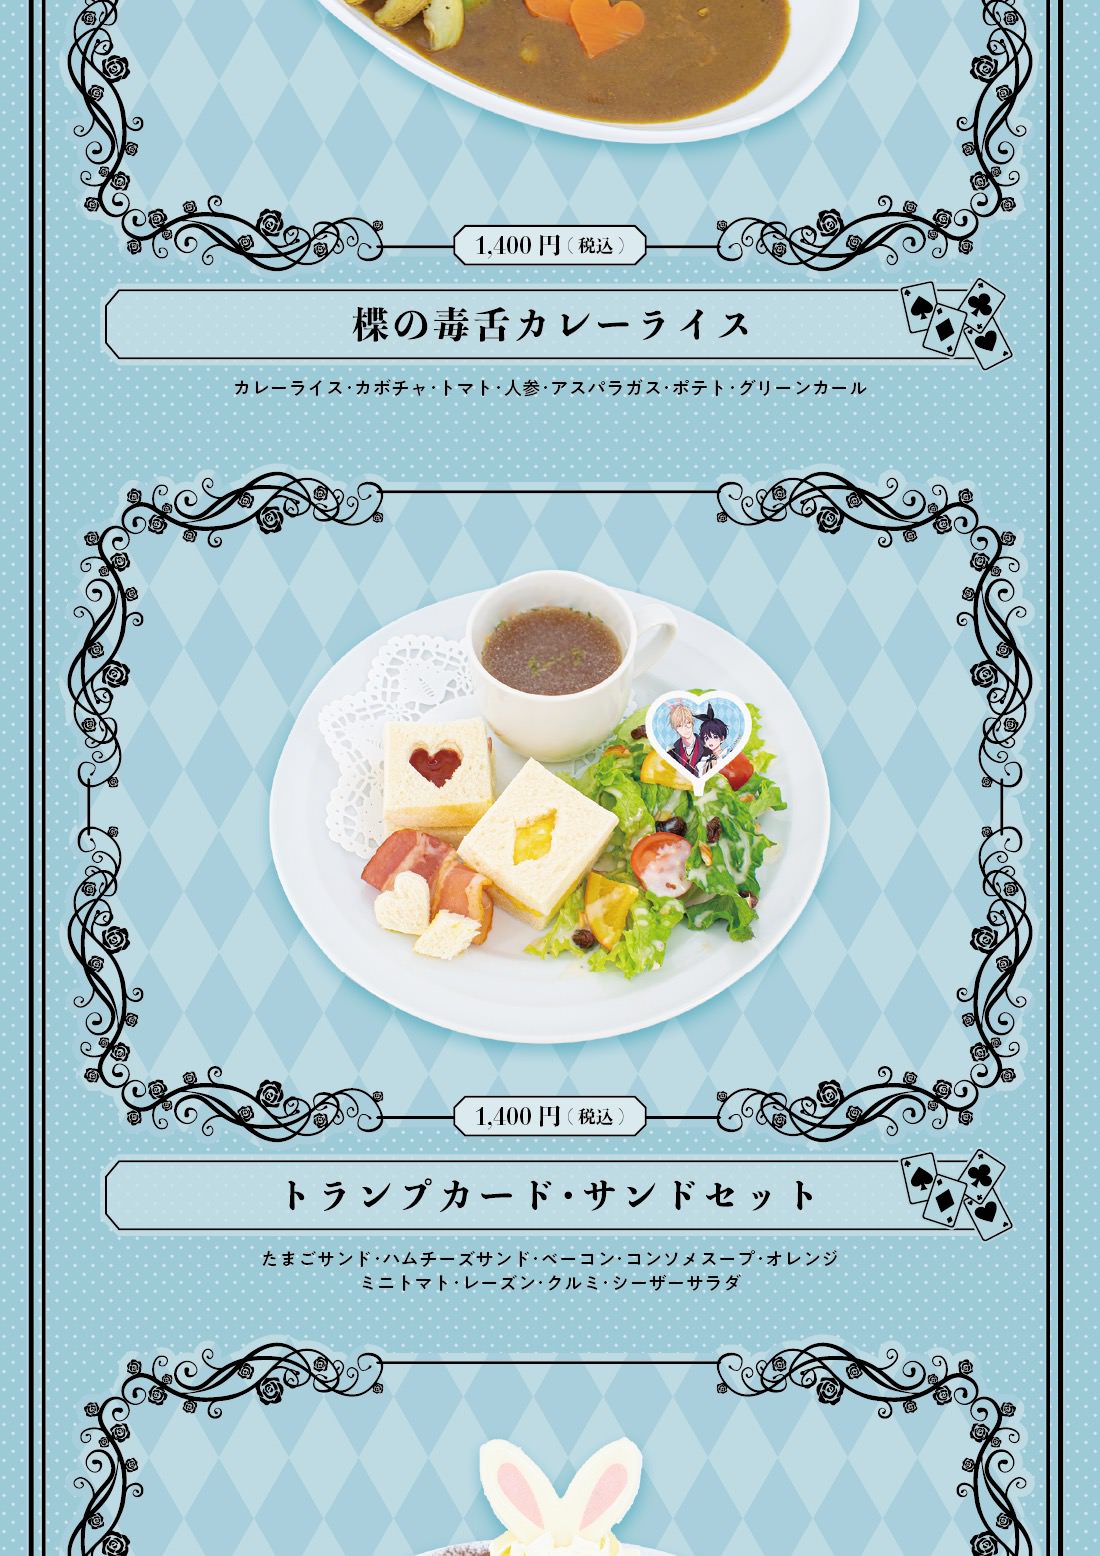 ナカまであいして × スマイルベースカフェ 5月12日よりコラボ順次開催!